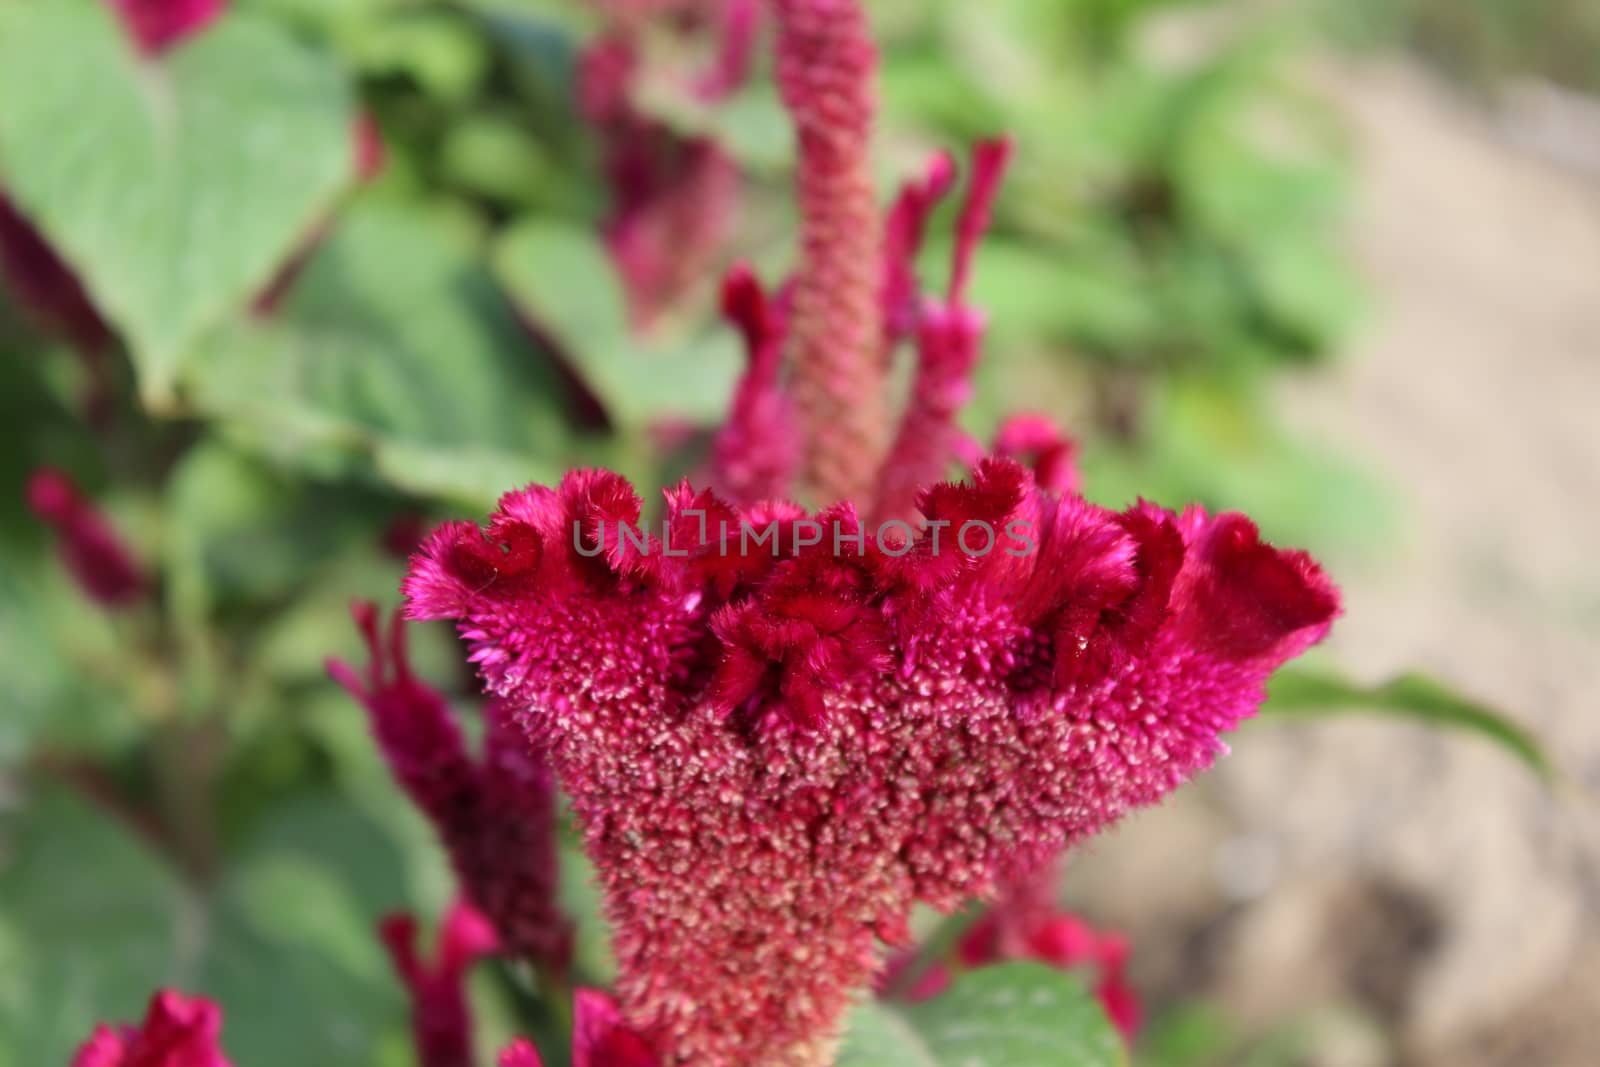 Celosia flower by nurjan100